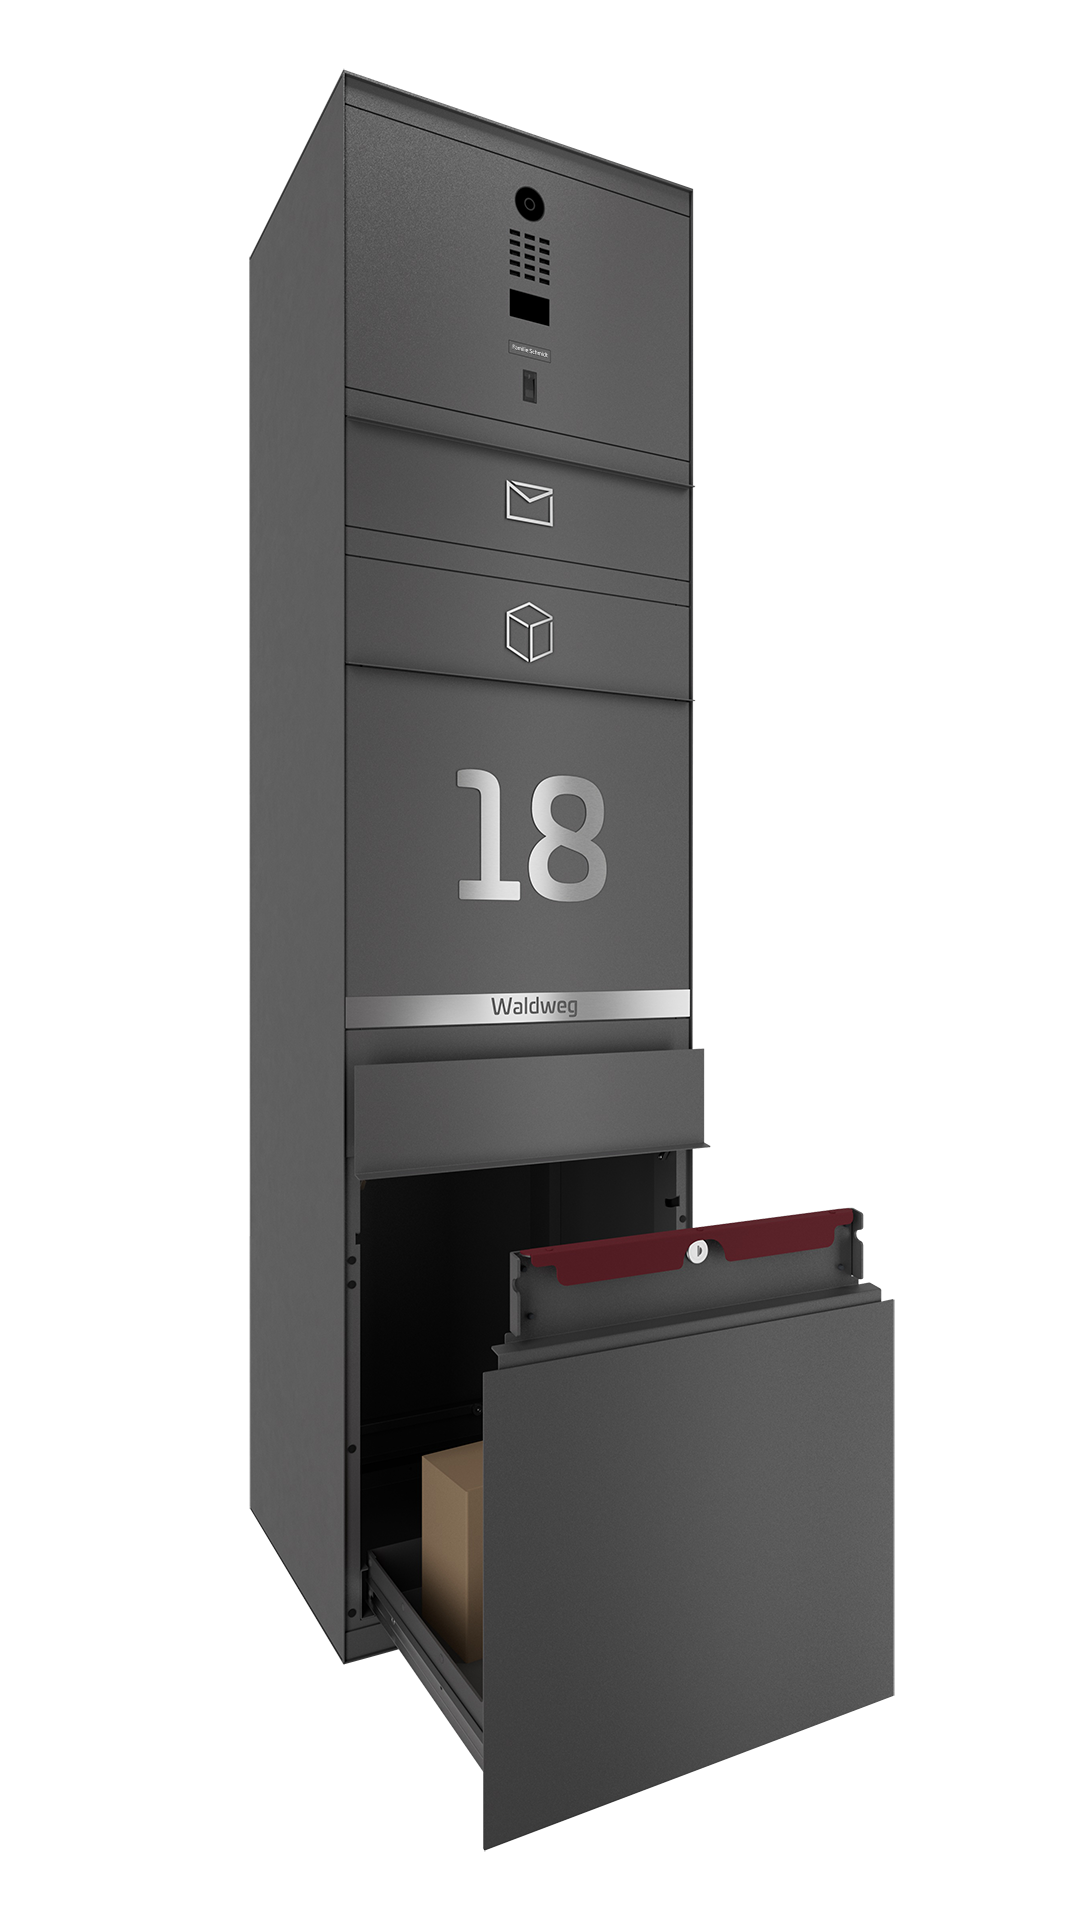 Paketbox mit DoorBird-Videotechnik und Fingerprint DB703